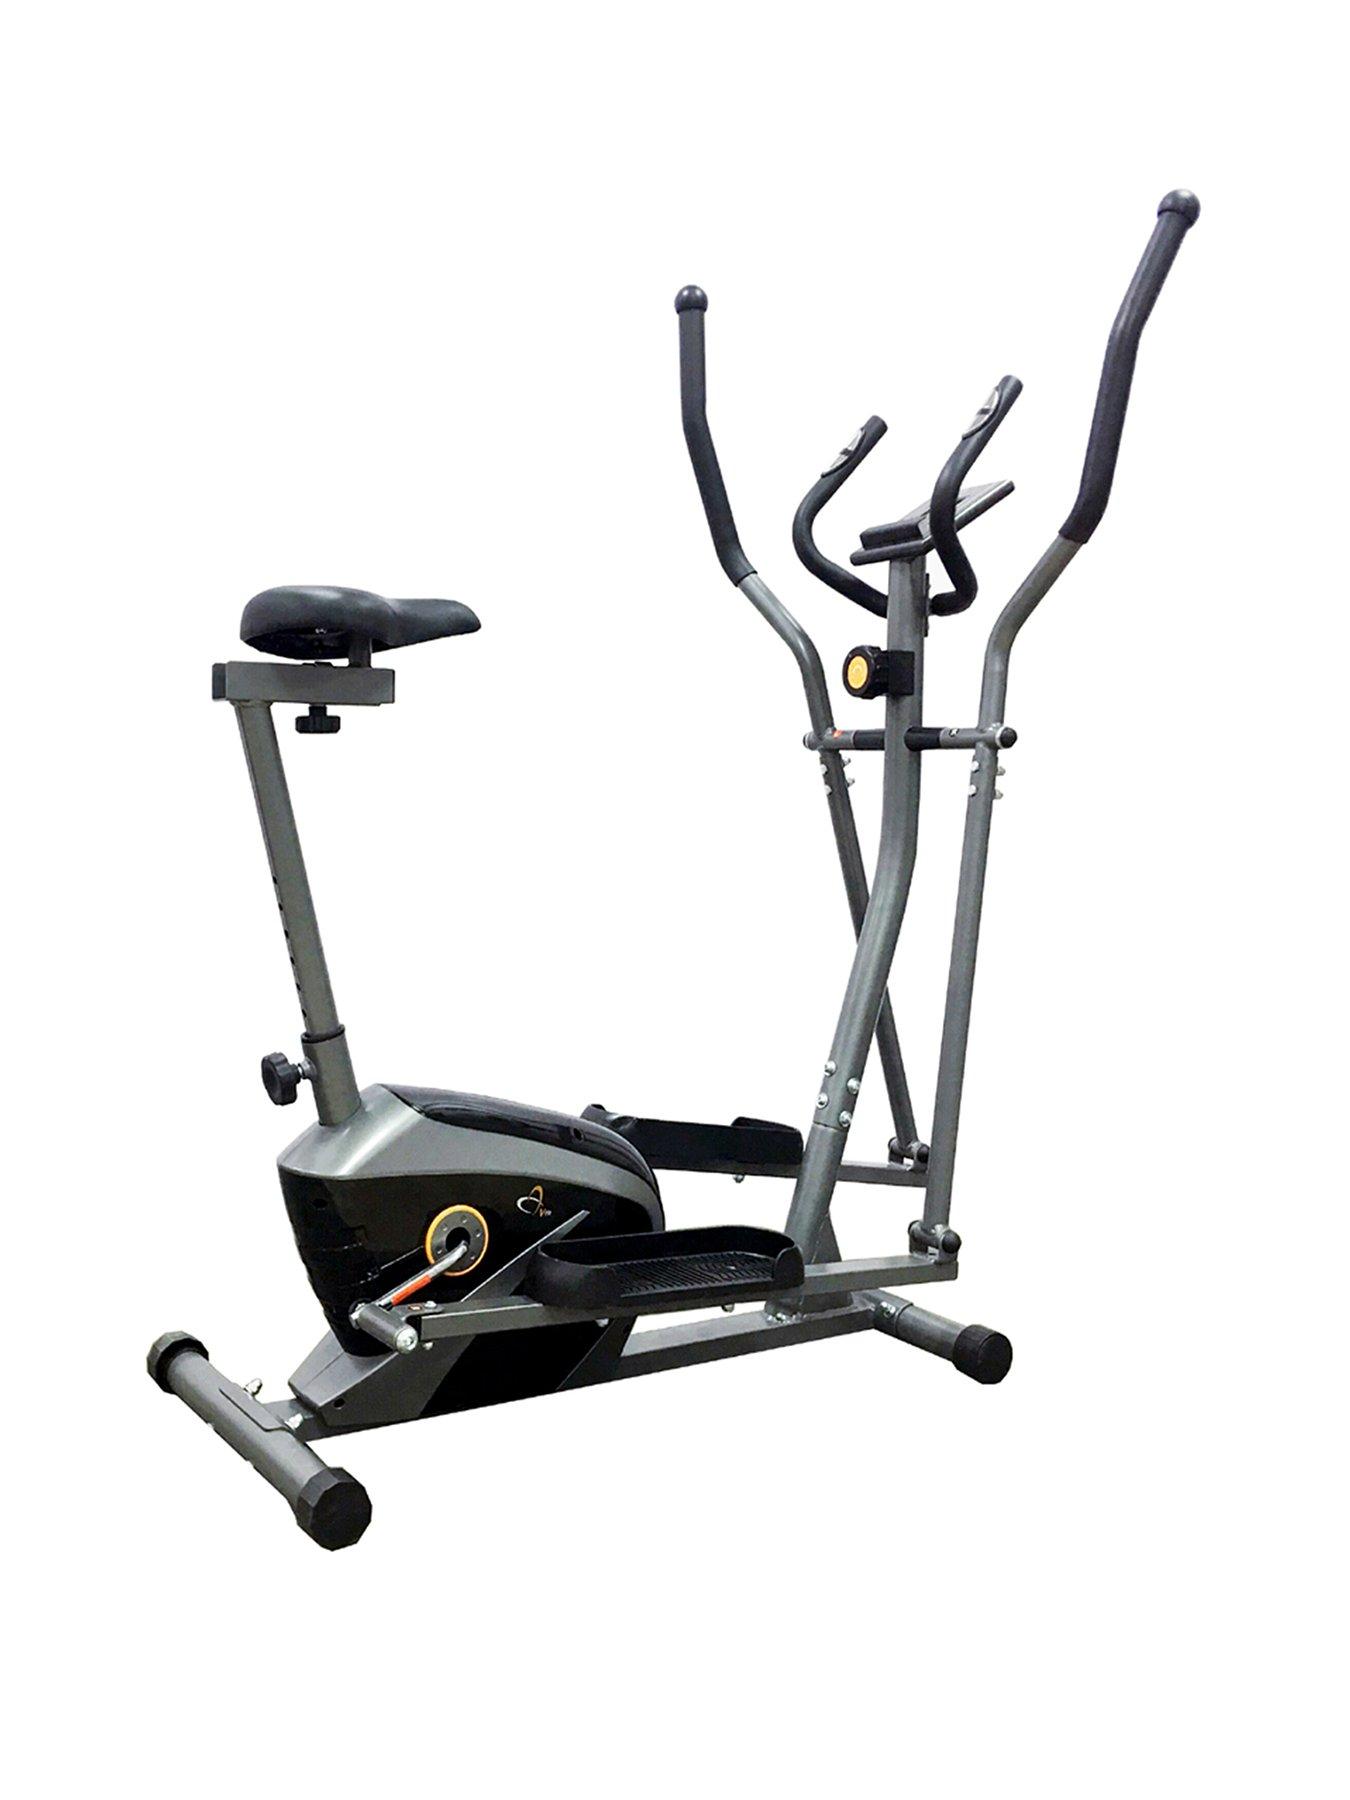 v fit elliptical trainer